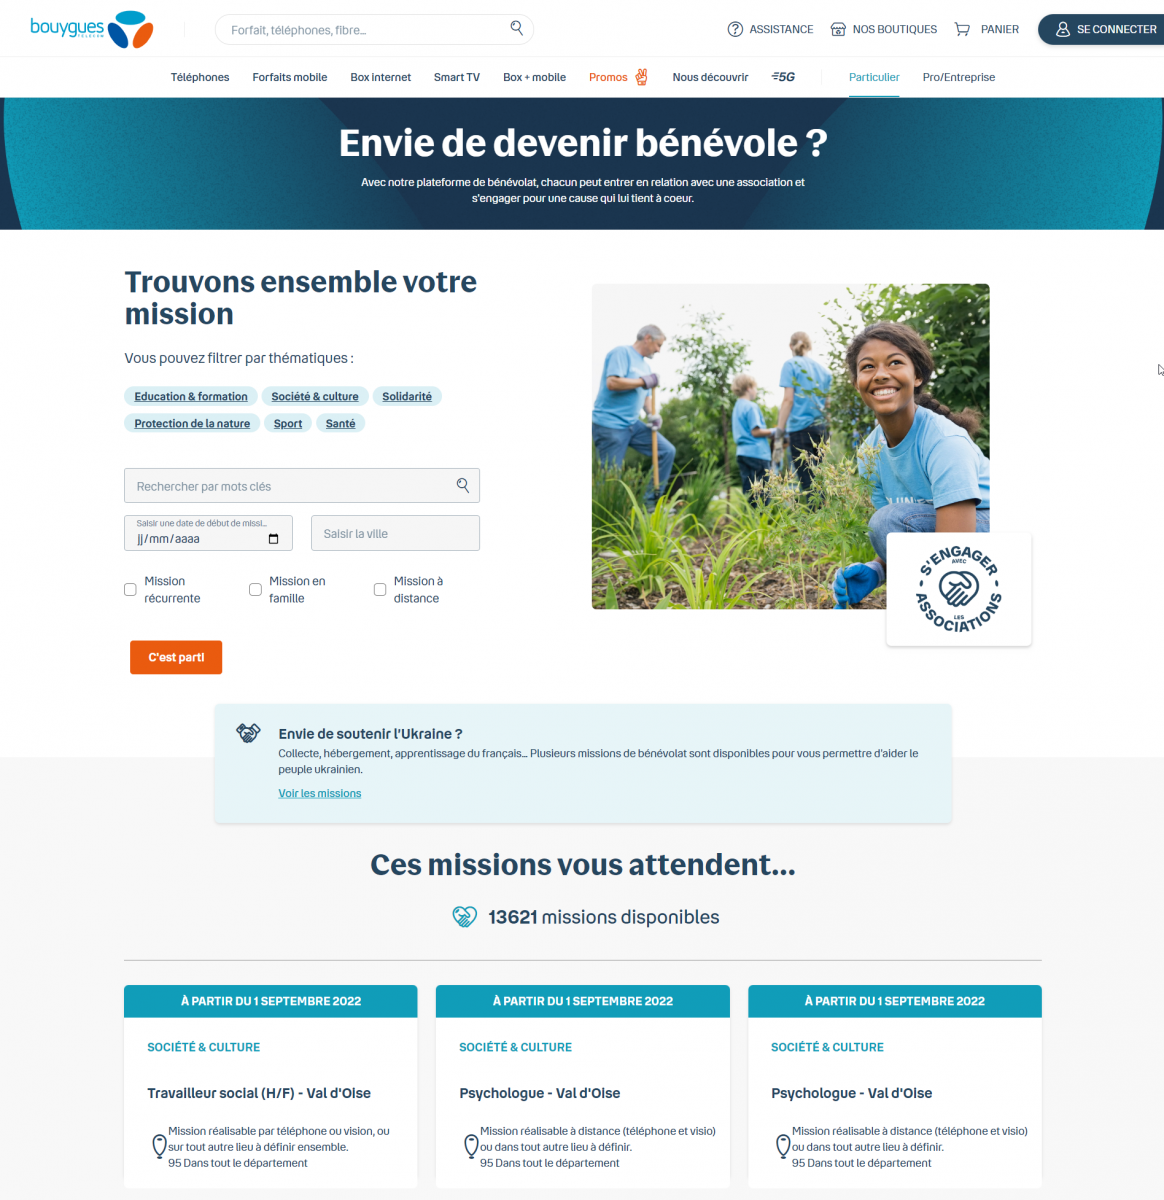 Capture d'écran de la plateforme bénévoles de Bouygues Telecom